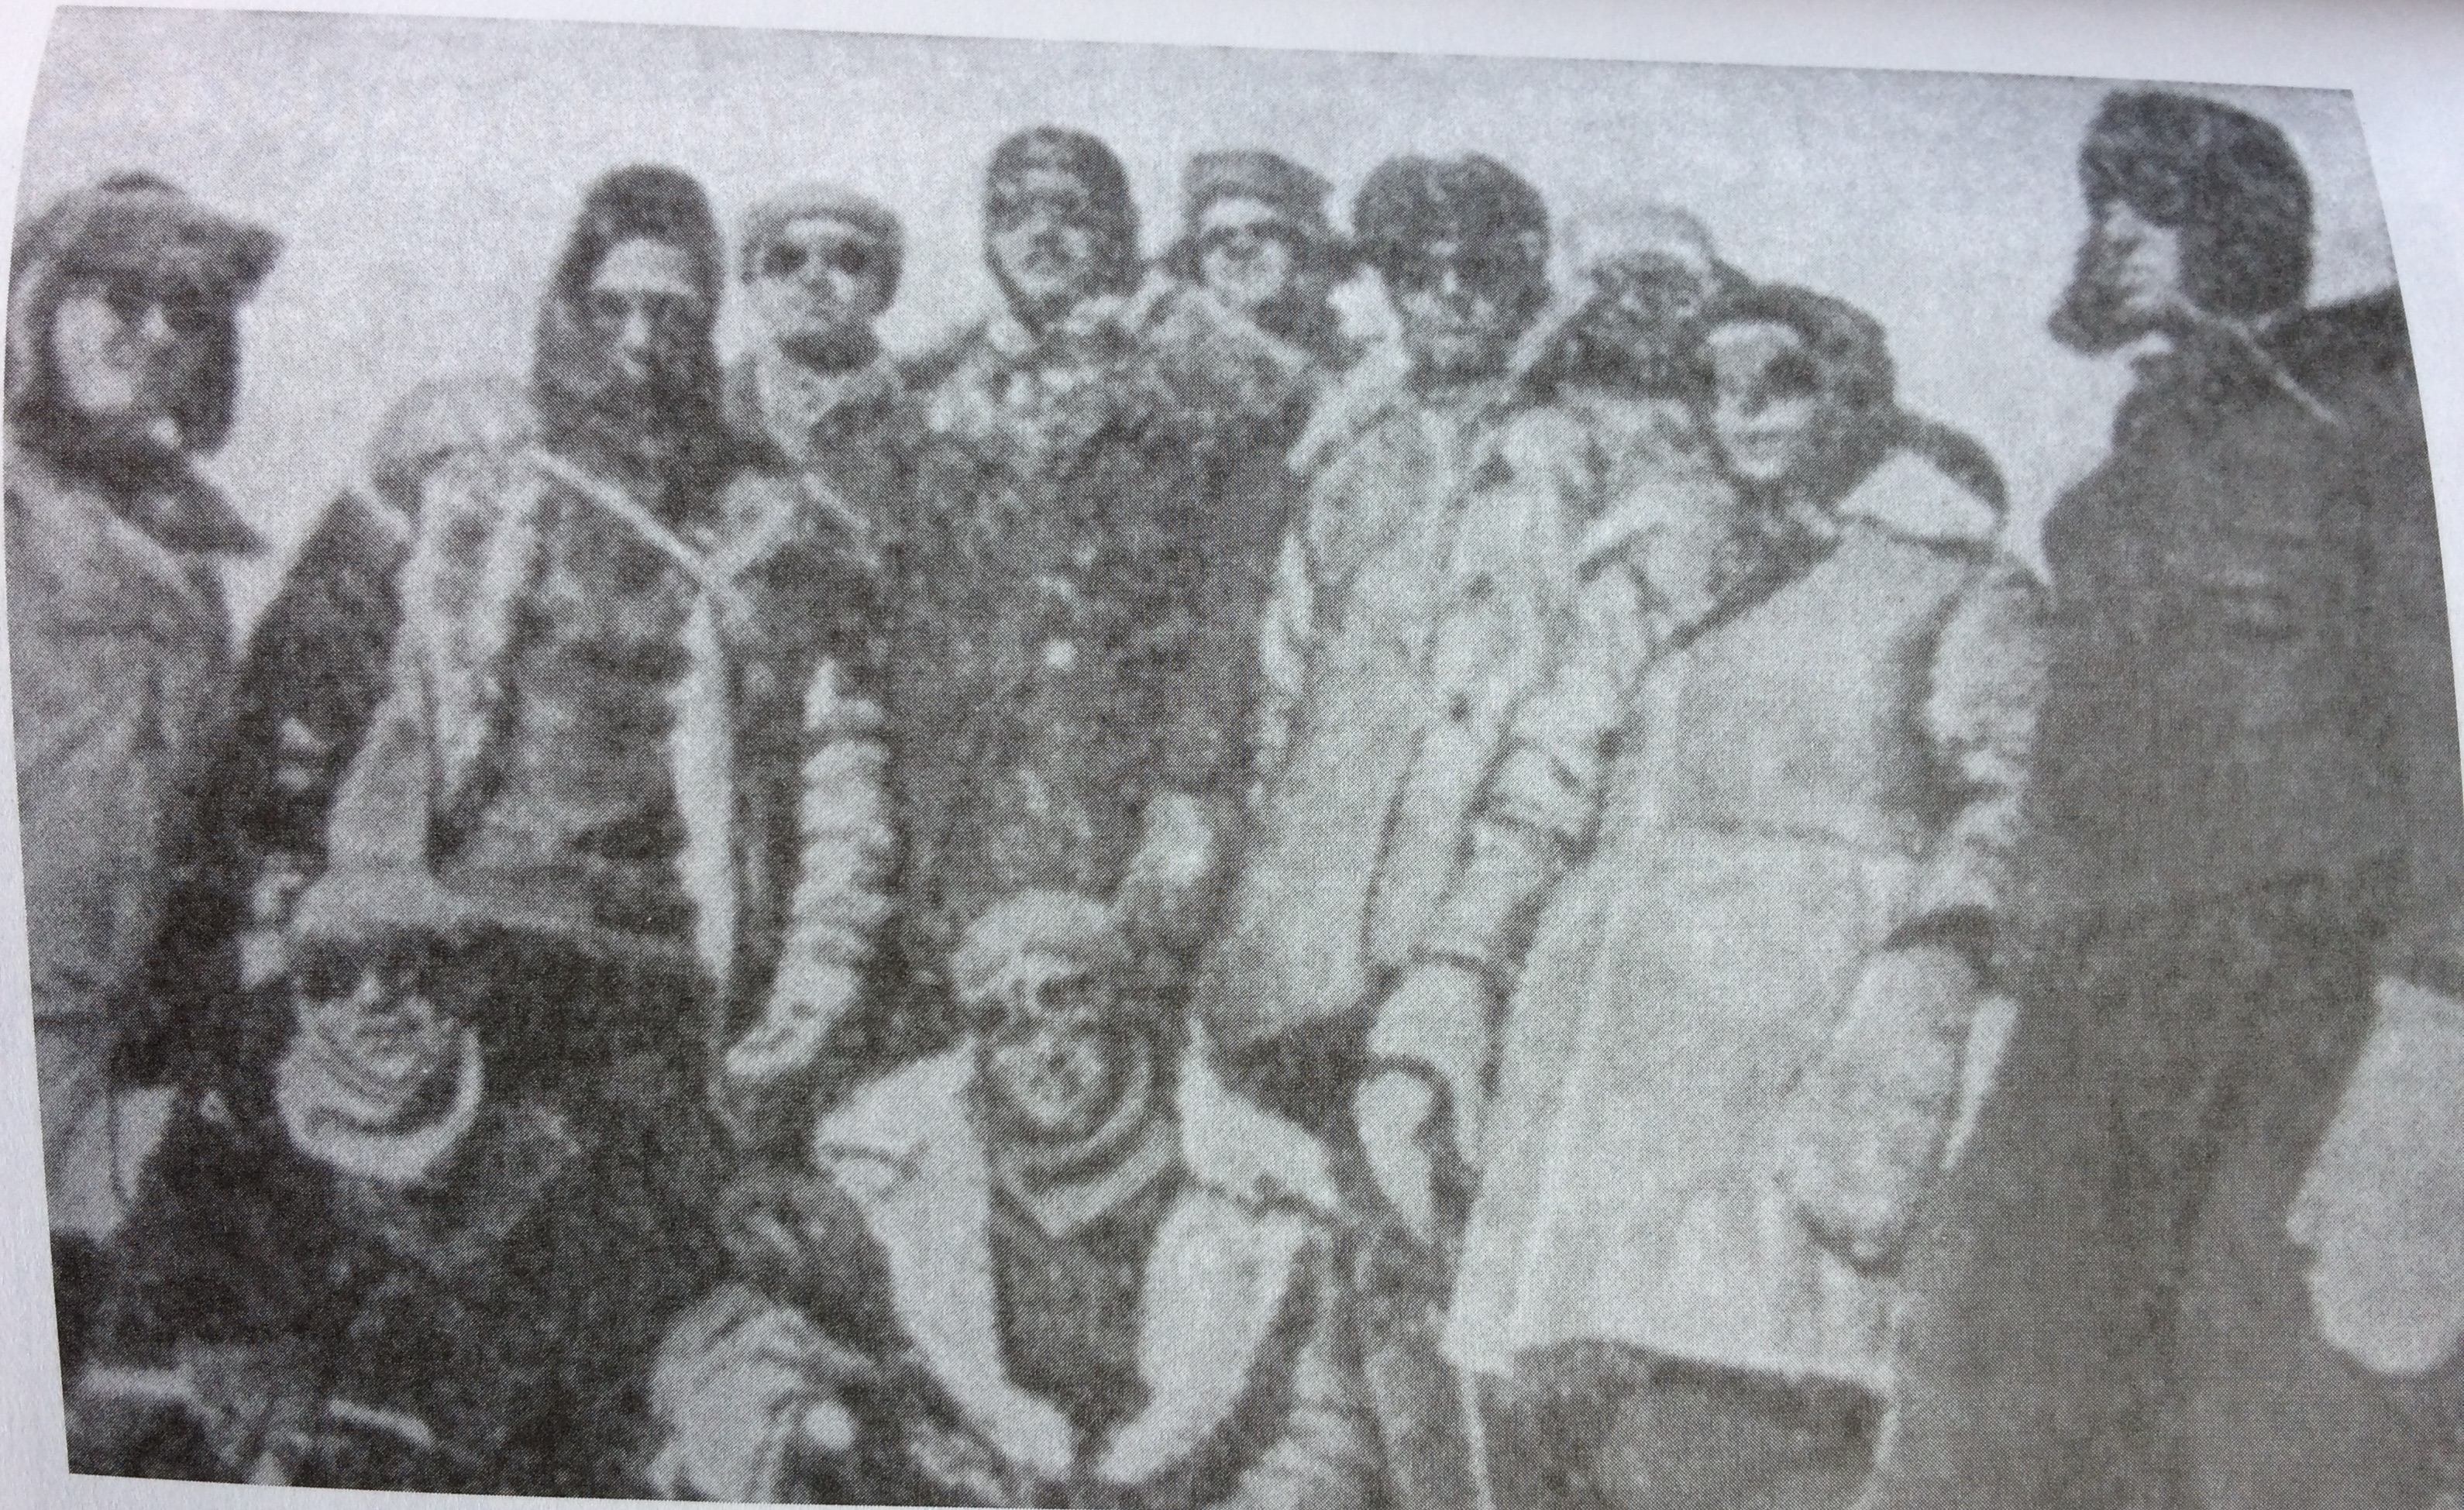 Группа военных альпинистов - участников восхождения на Эльбрус. Февраль 1943 г.